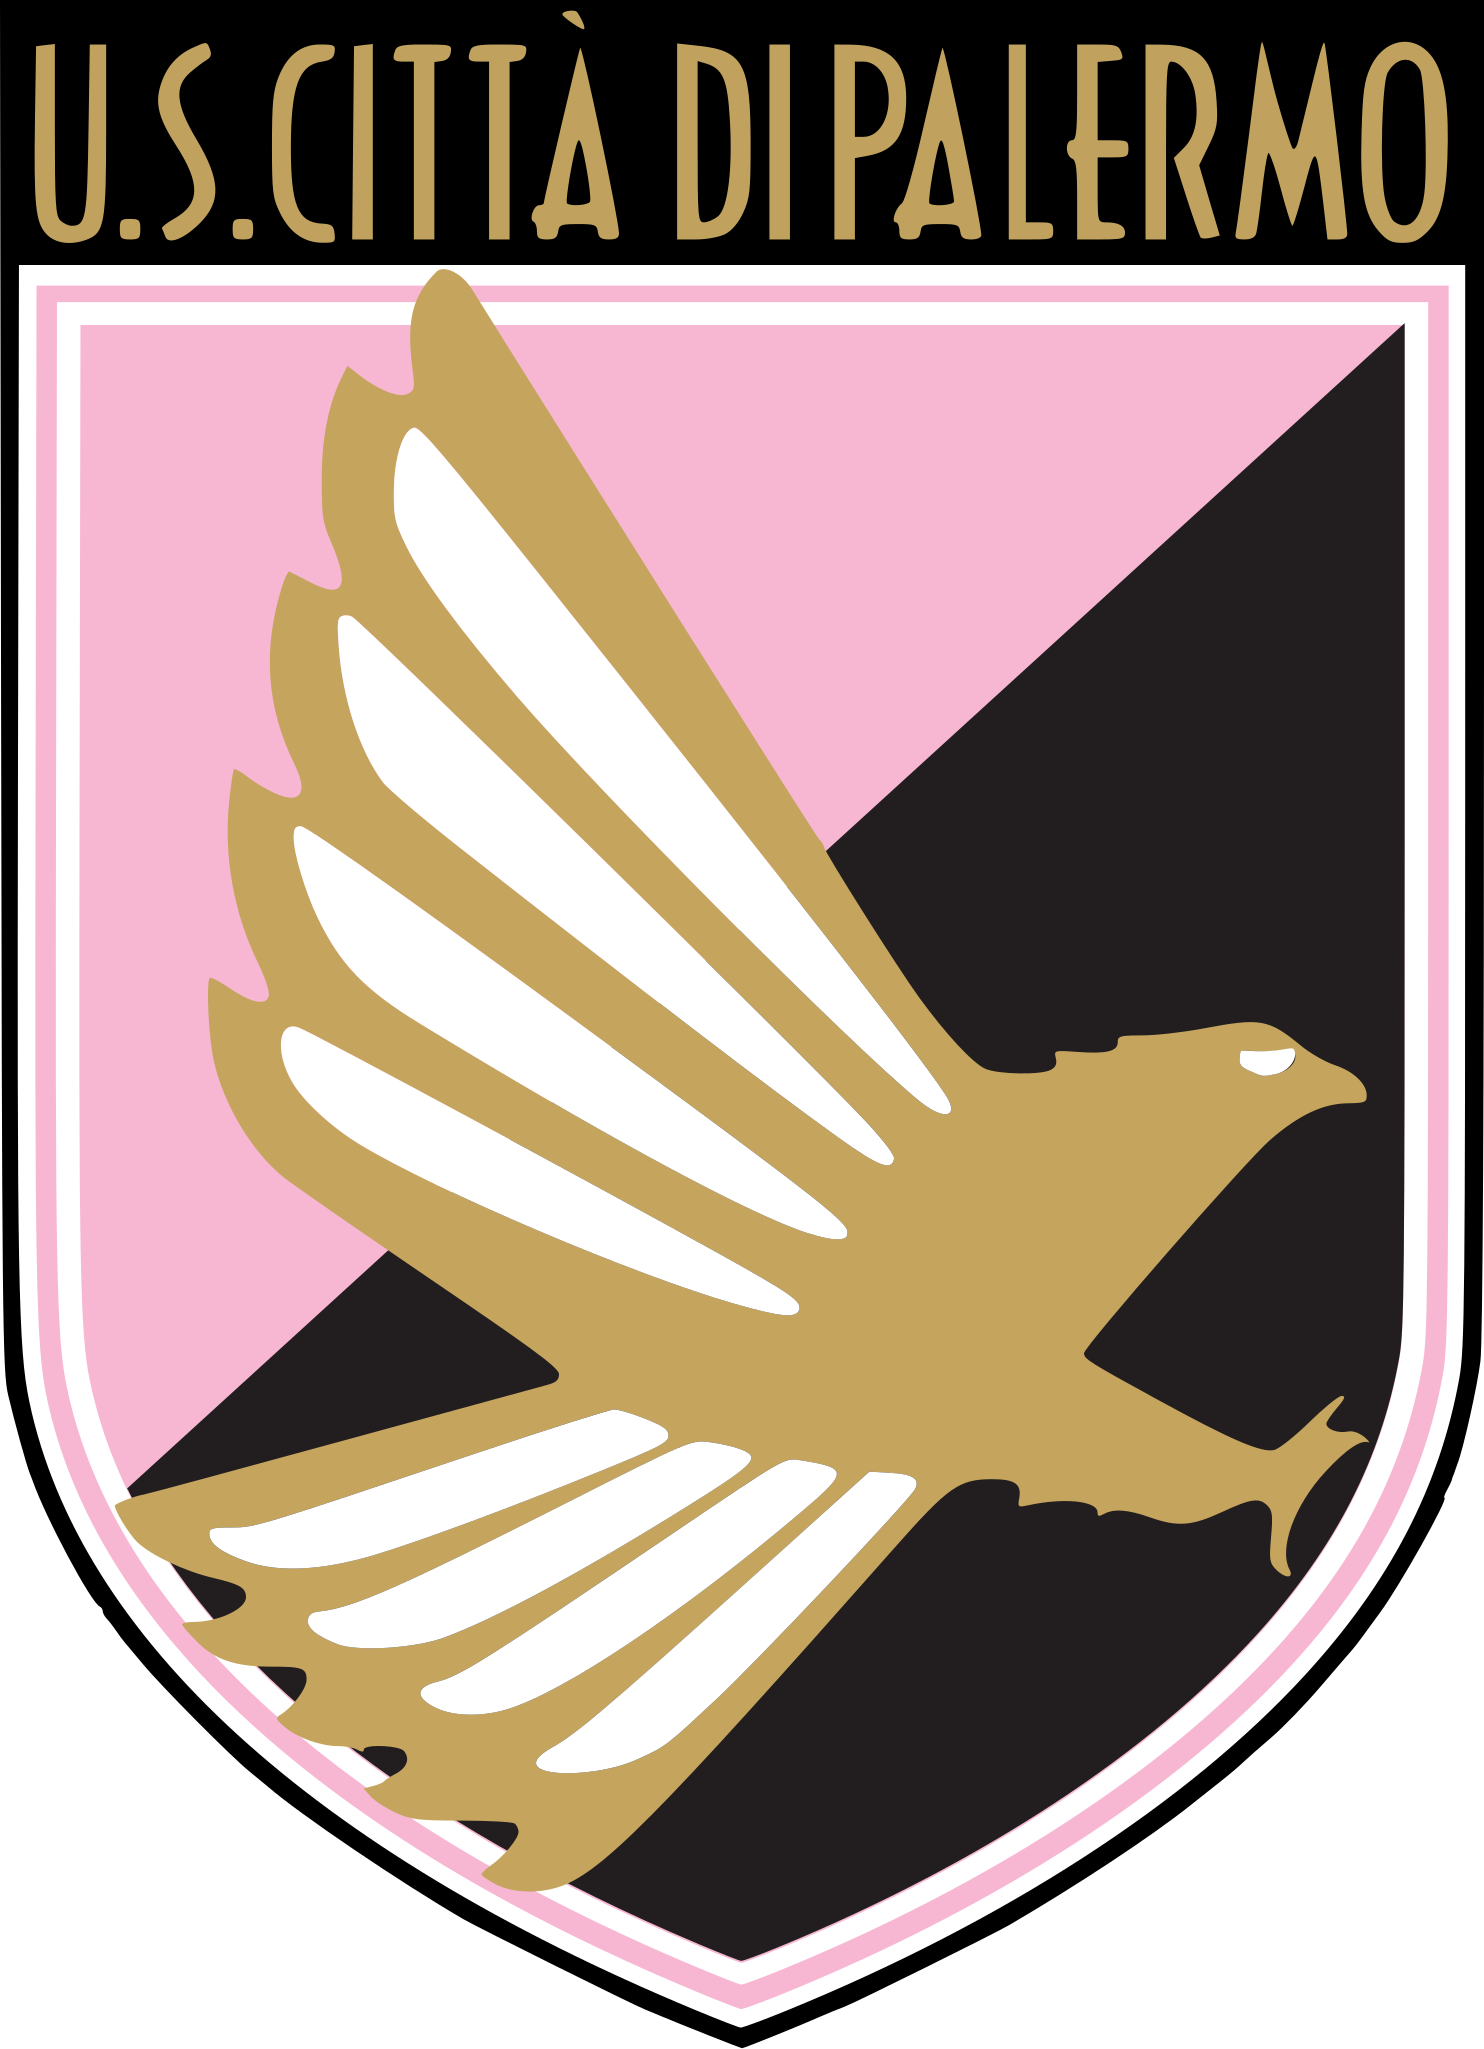 File:Deus Palermo Calcio.png - Wikipedia